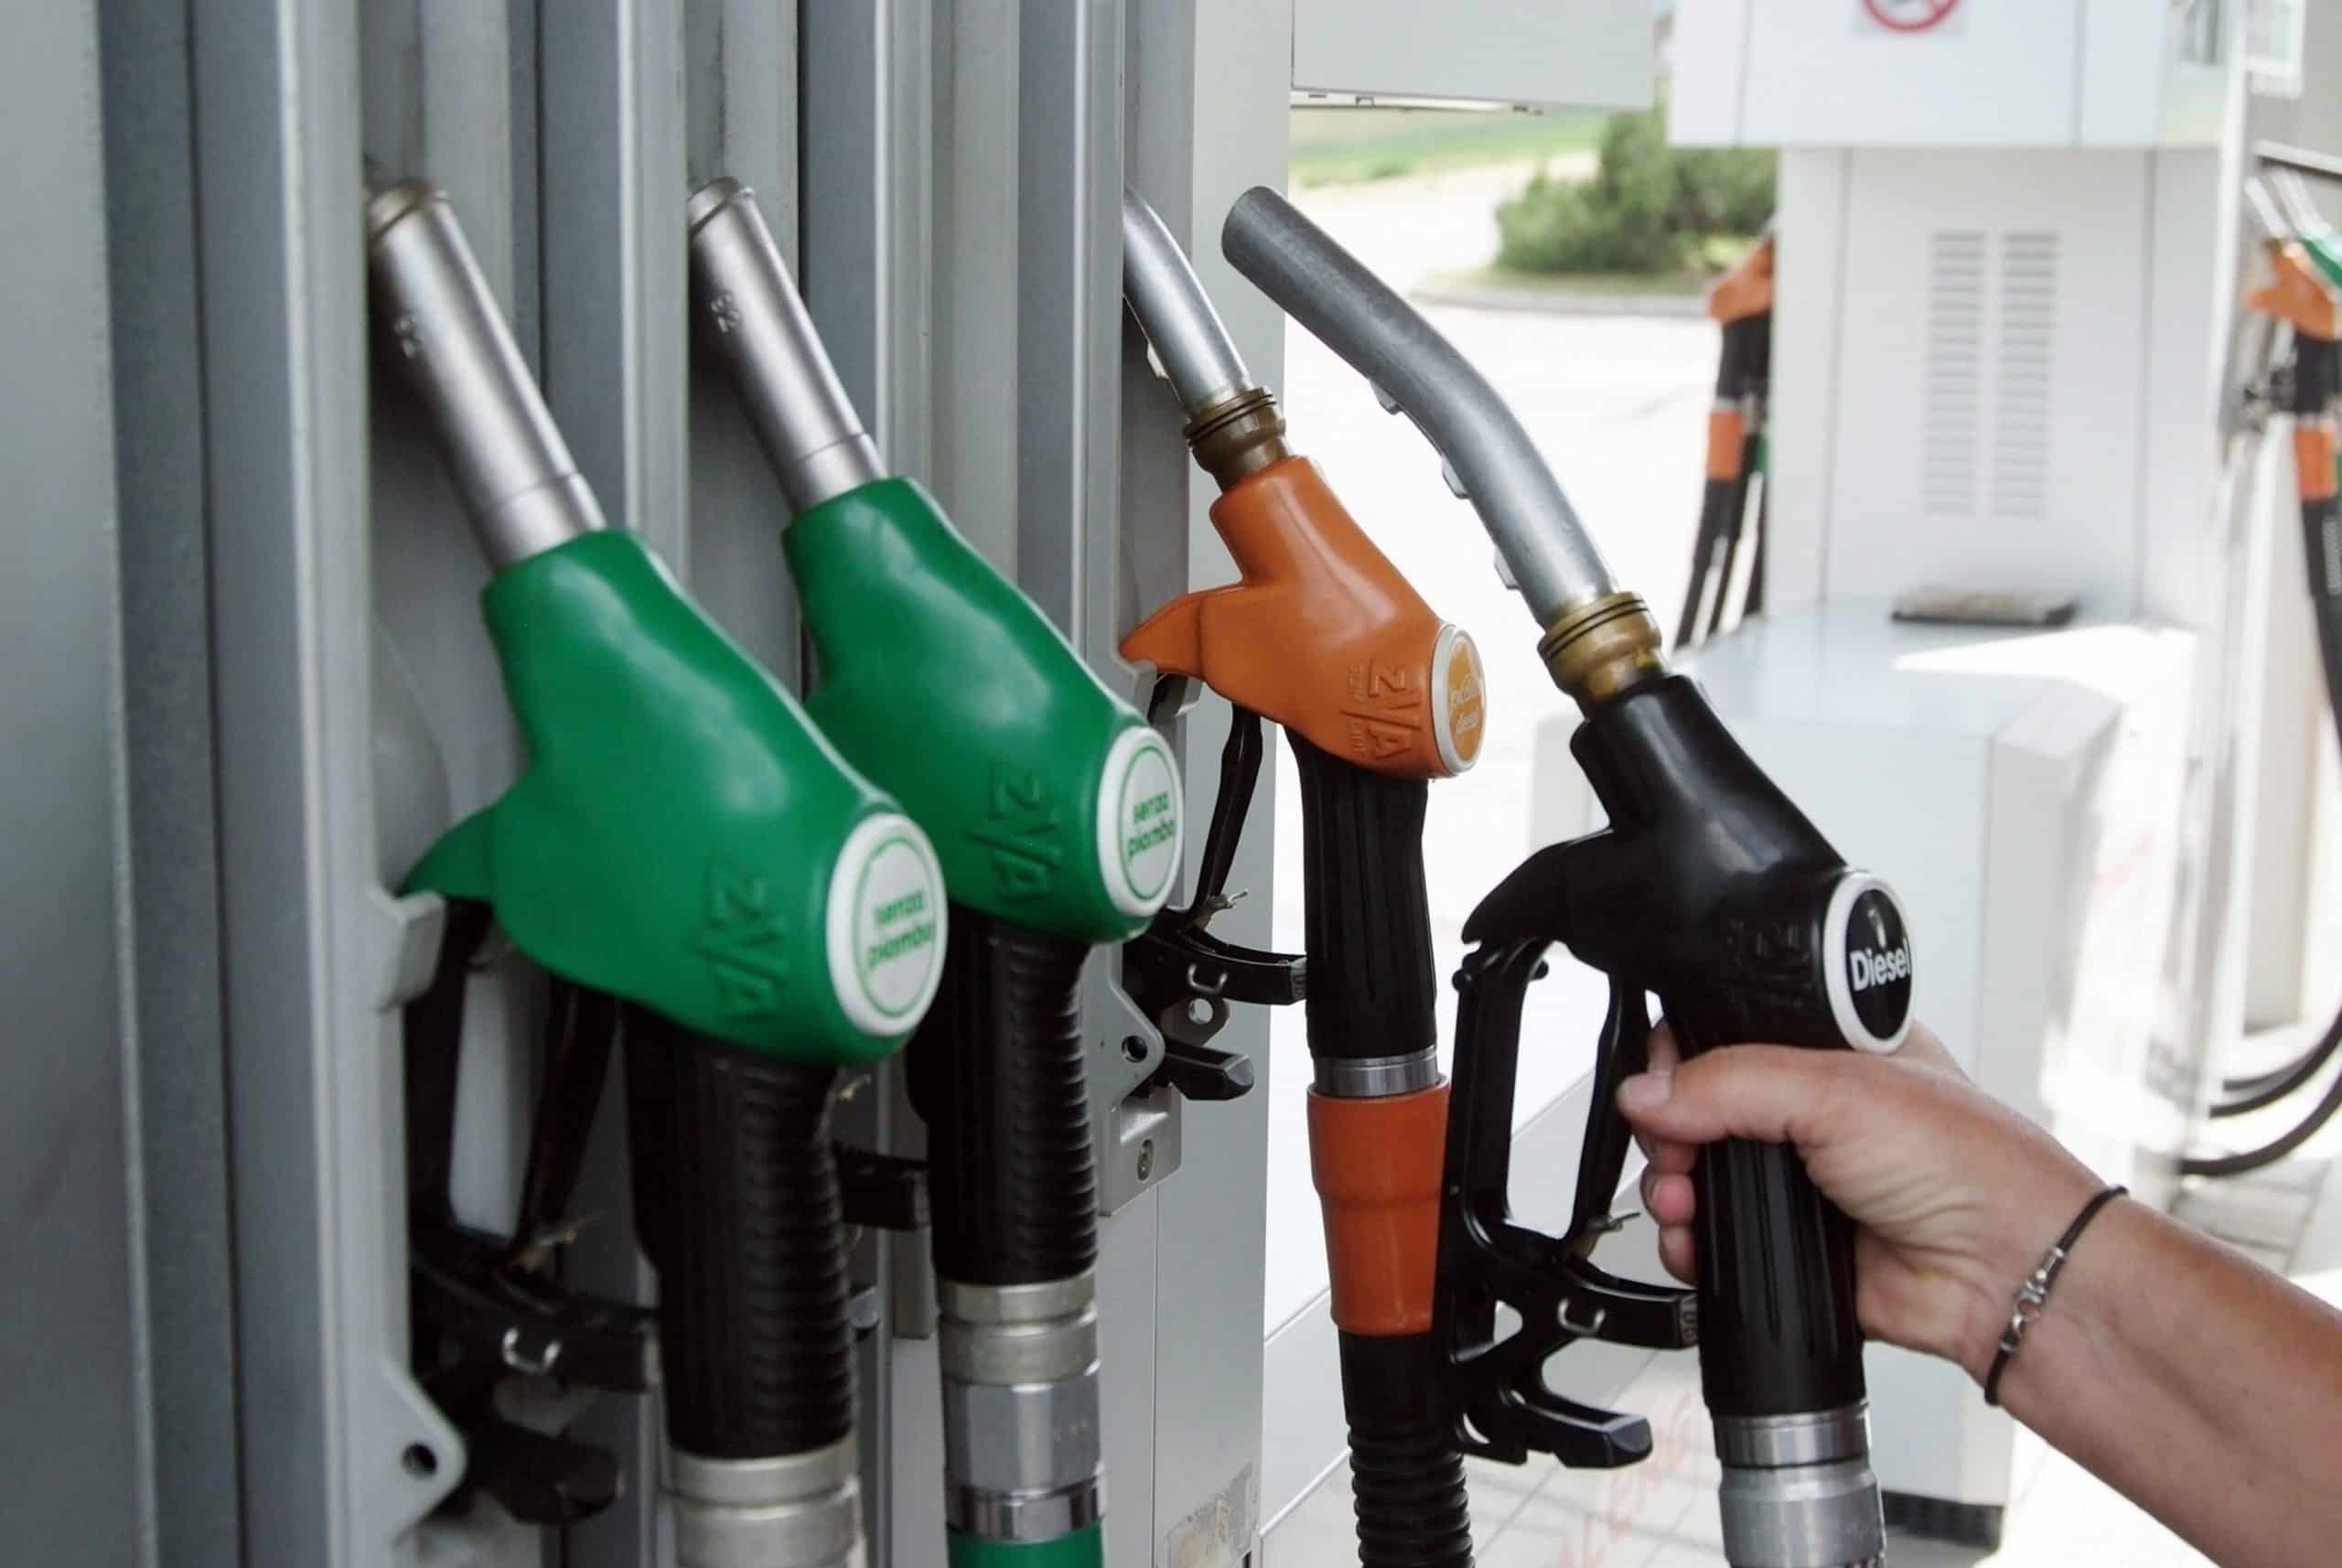 Tornano gli aumenti incontrollati sui carburanti, prezzi di nuovo alle stelle